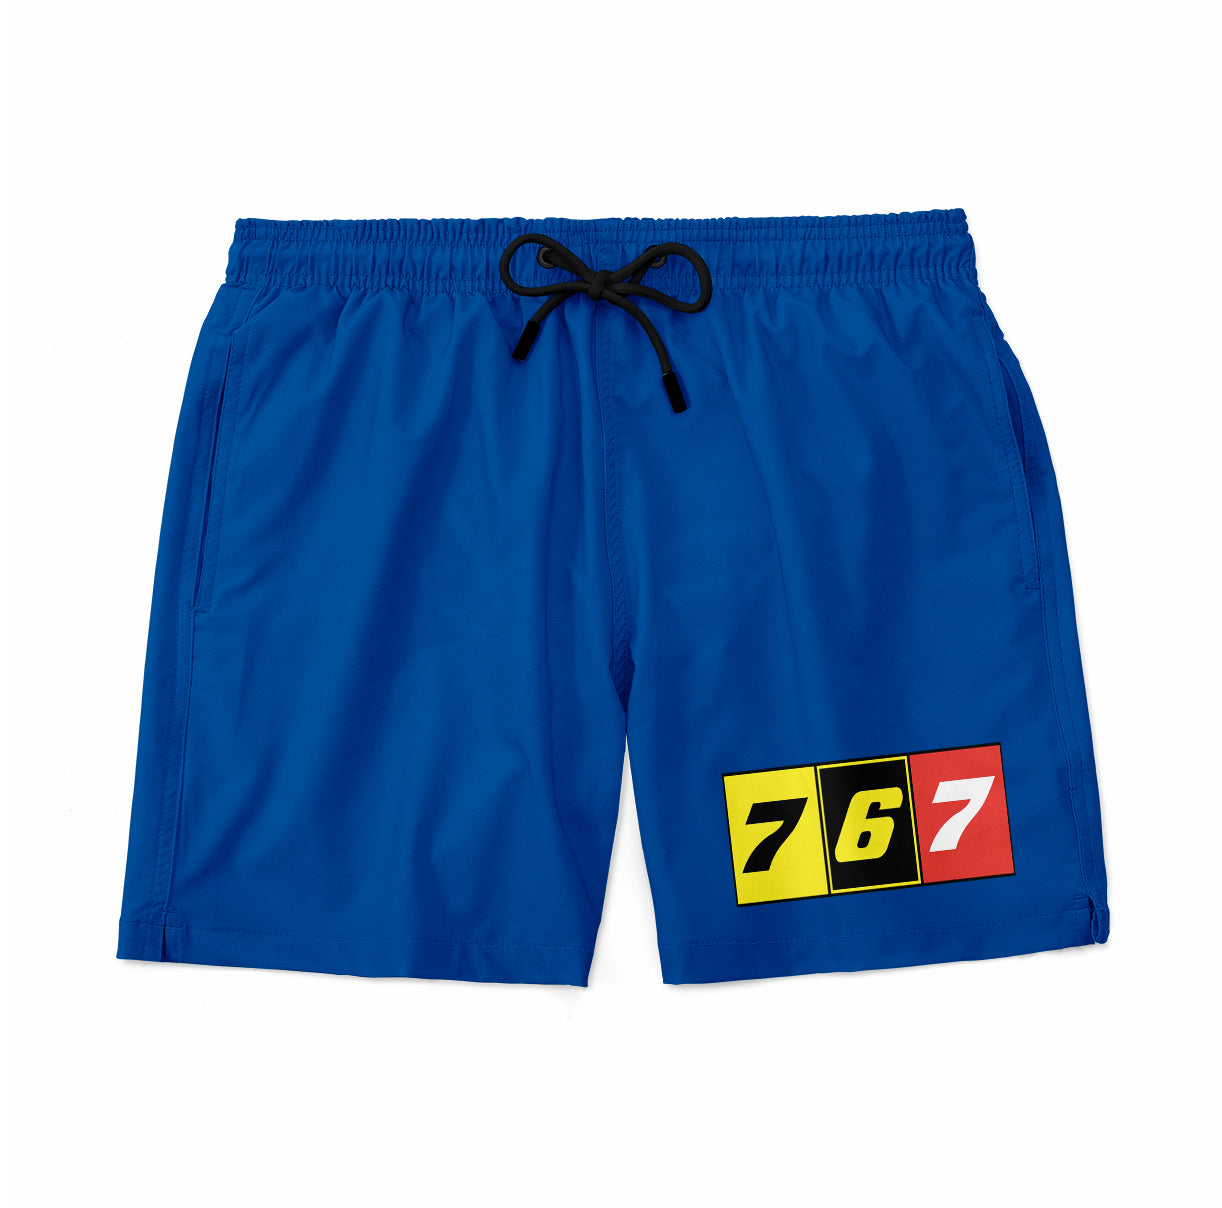 Flat Colourful 767 Designed Swim Trunks & Shorts